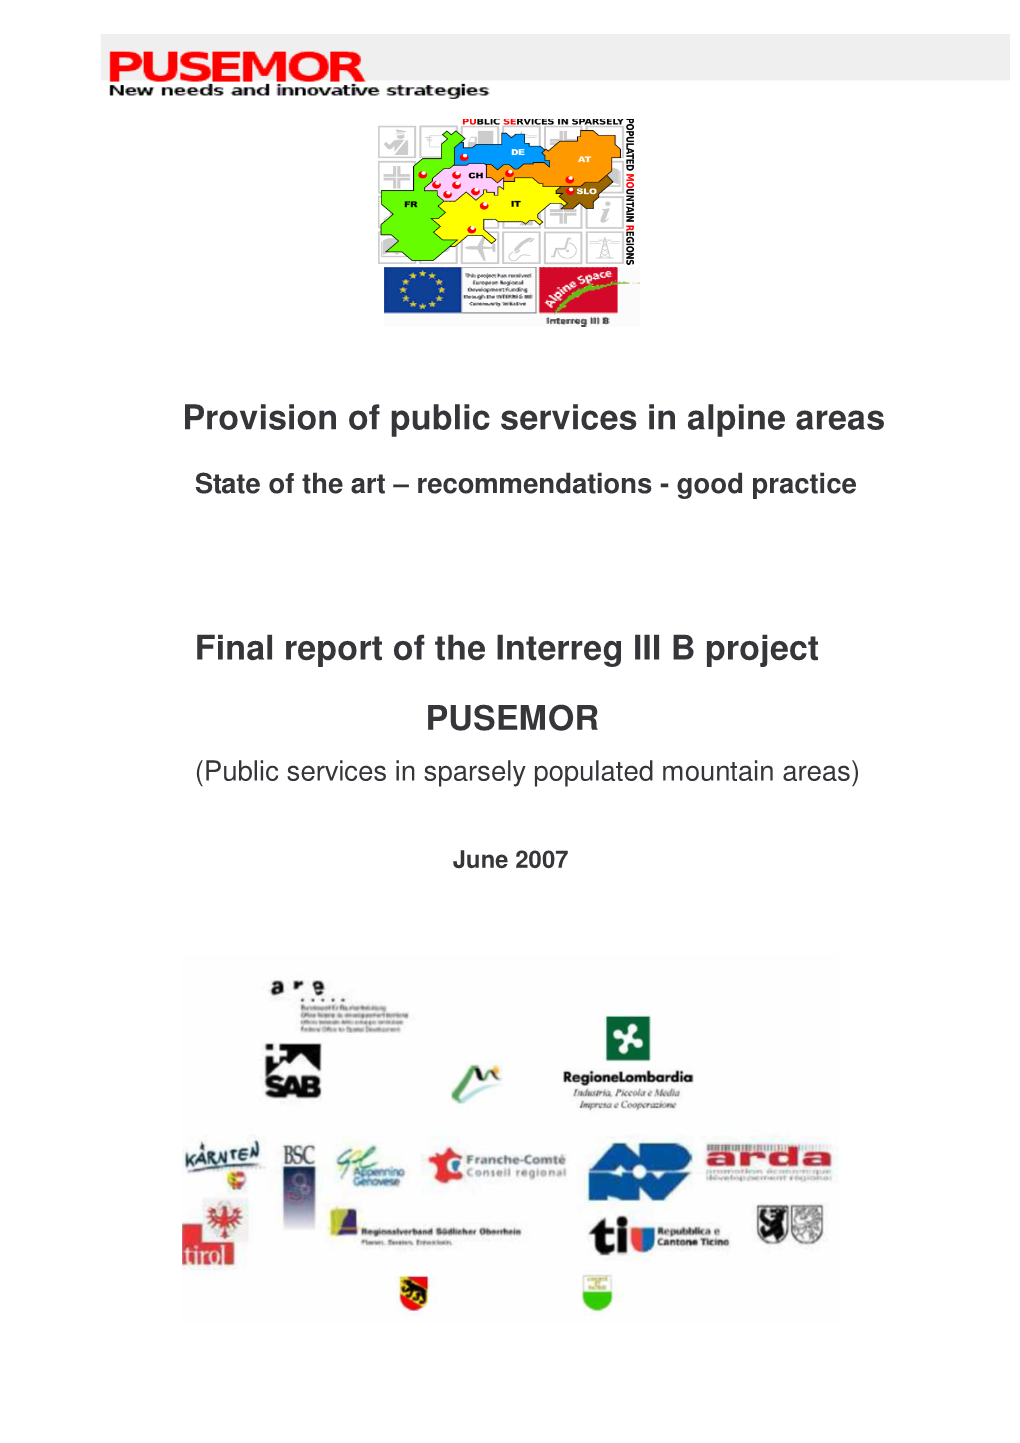 PUSEMOR Final Report Internet